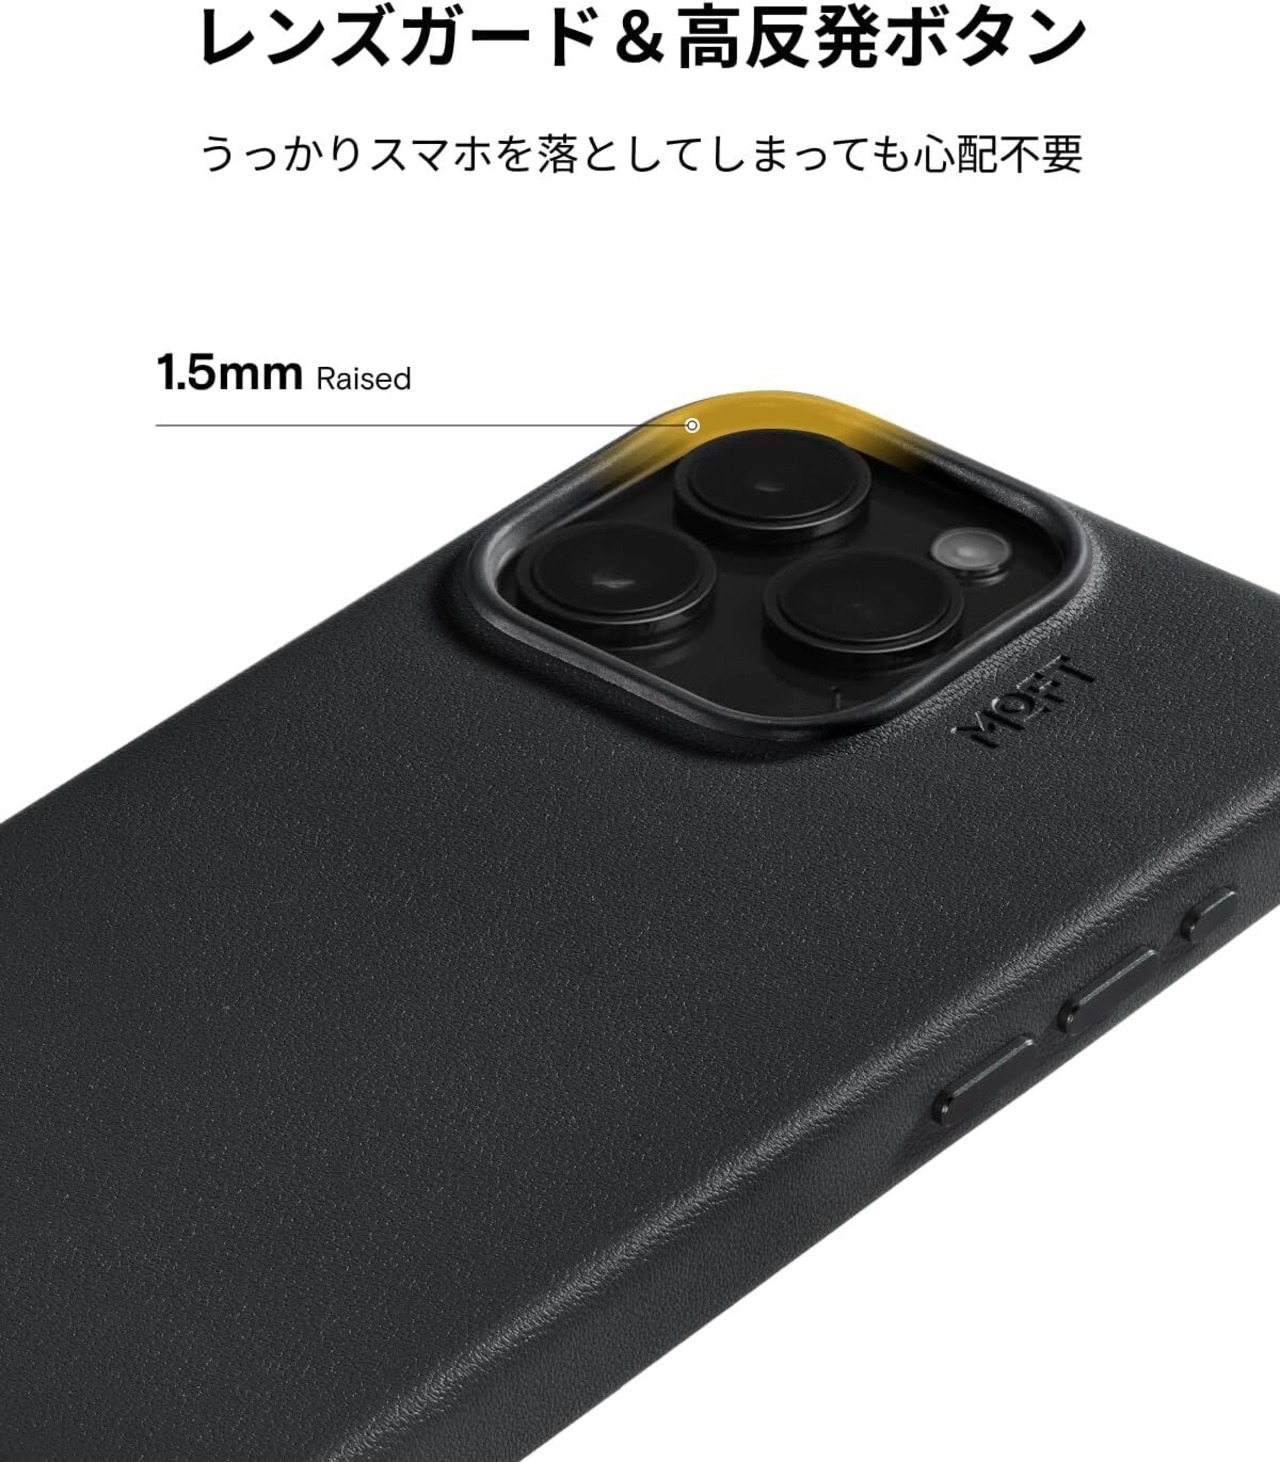 MOFT iPhone 15 Pro対応 MOVAS™ レザーケース MagSafe対応 高耐久 汚れに強い 磁力強化 軽量 ワイヤレス充電対応 1.5m落下防止 高反発ボタン 全面保護 保護ケース